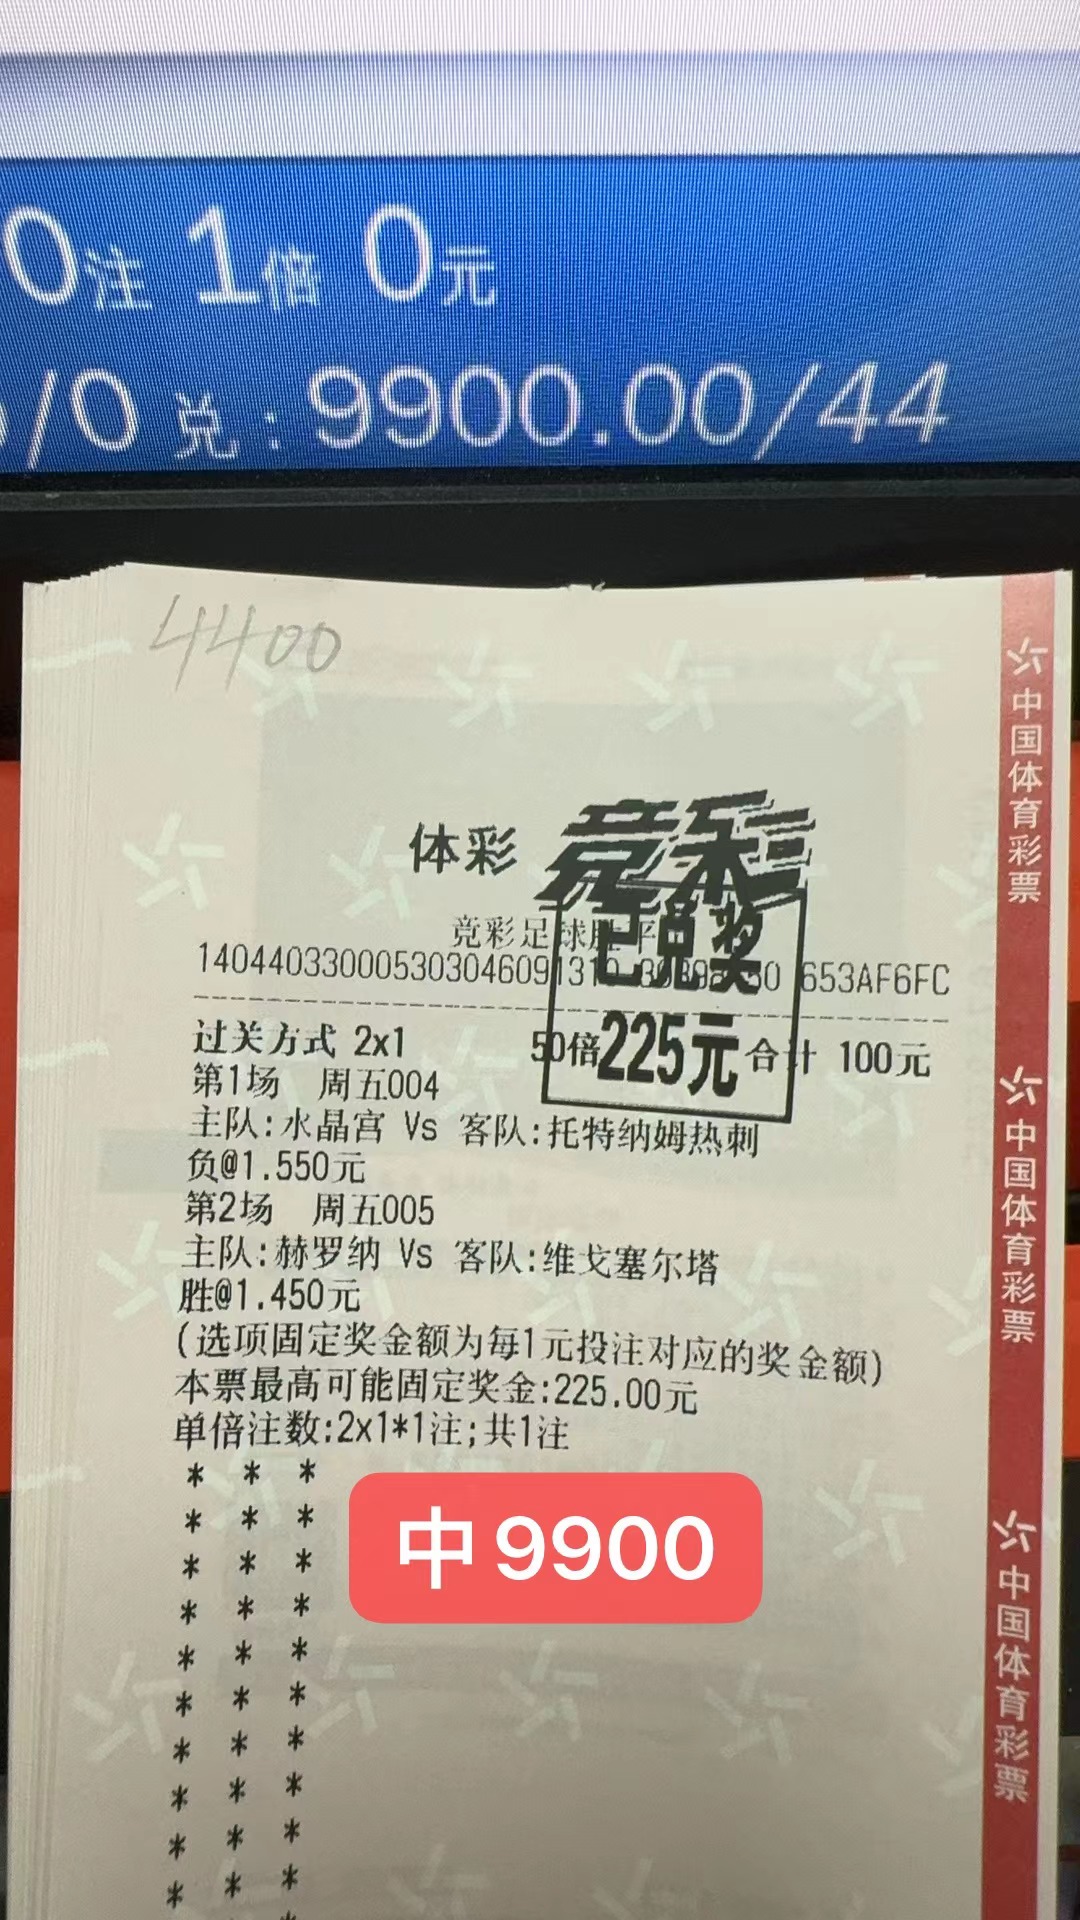 10月29日竞足收米9900元-北单实体店